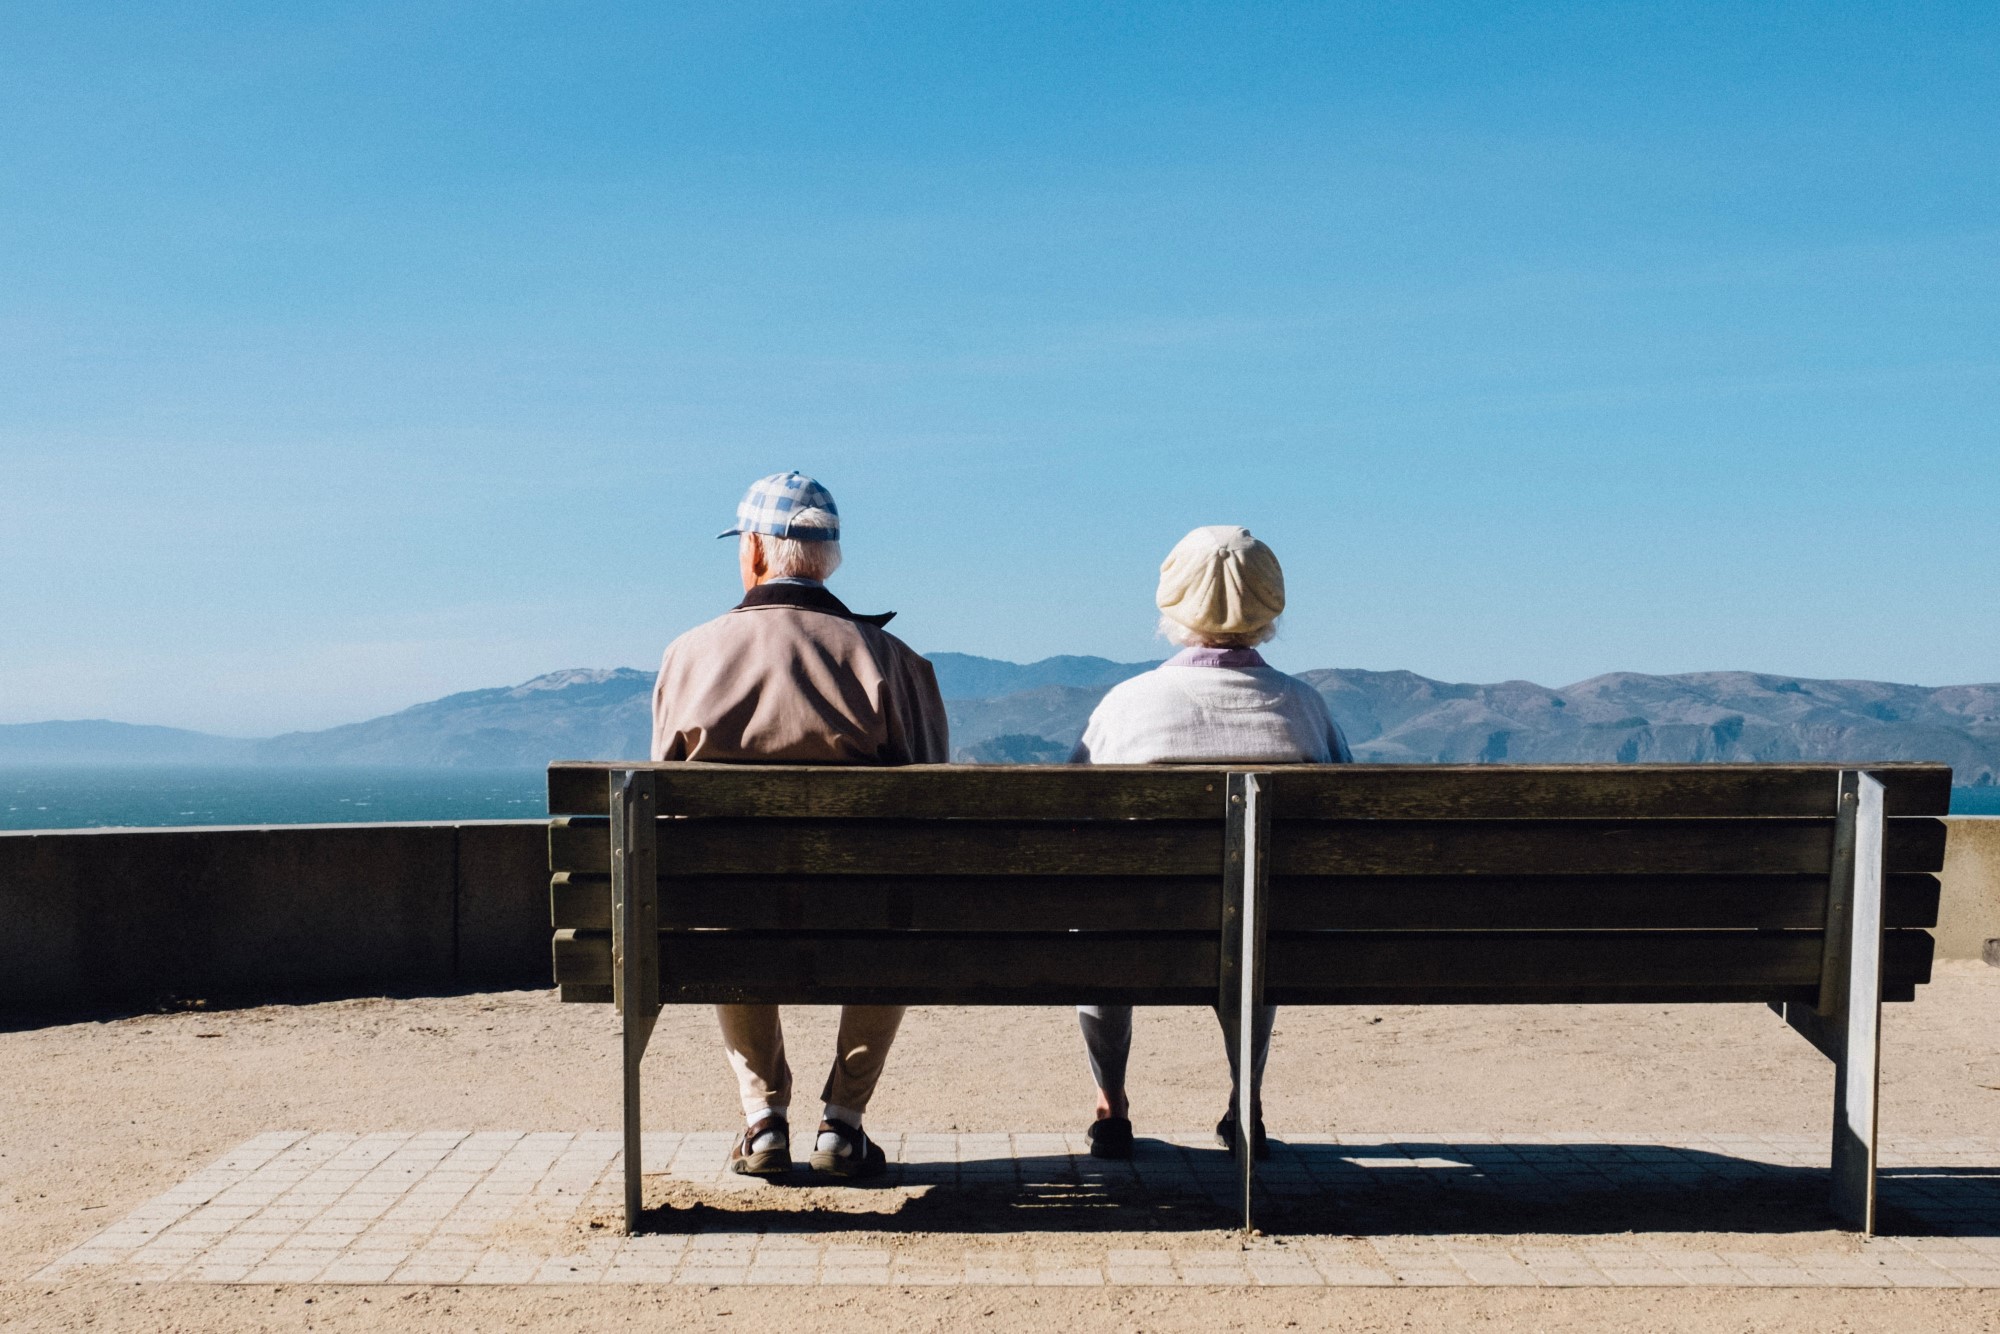 Eldre mann og eldre kvinne sitter på benk og ser utover havet